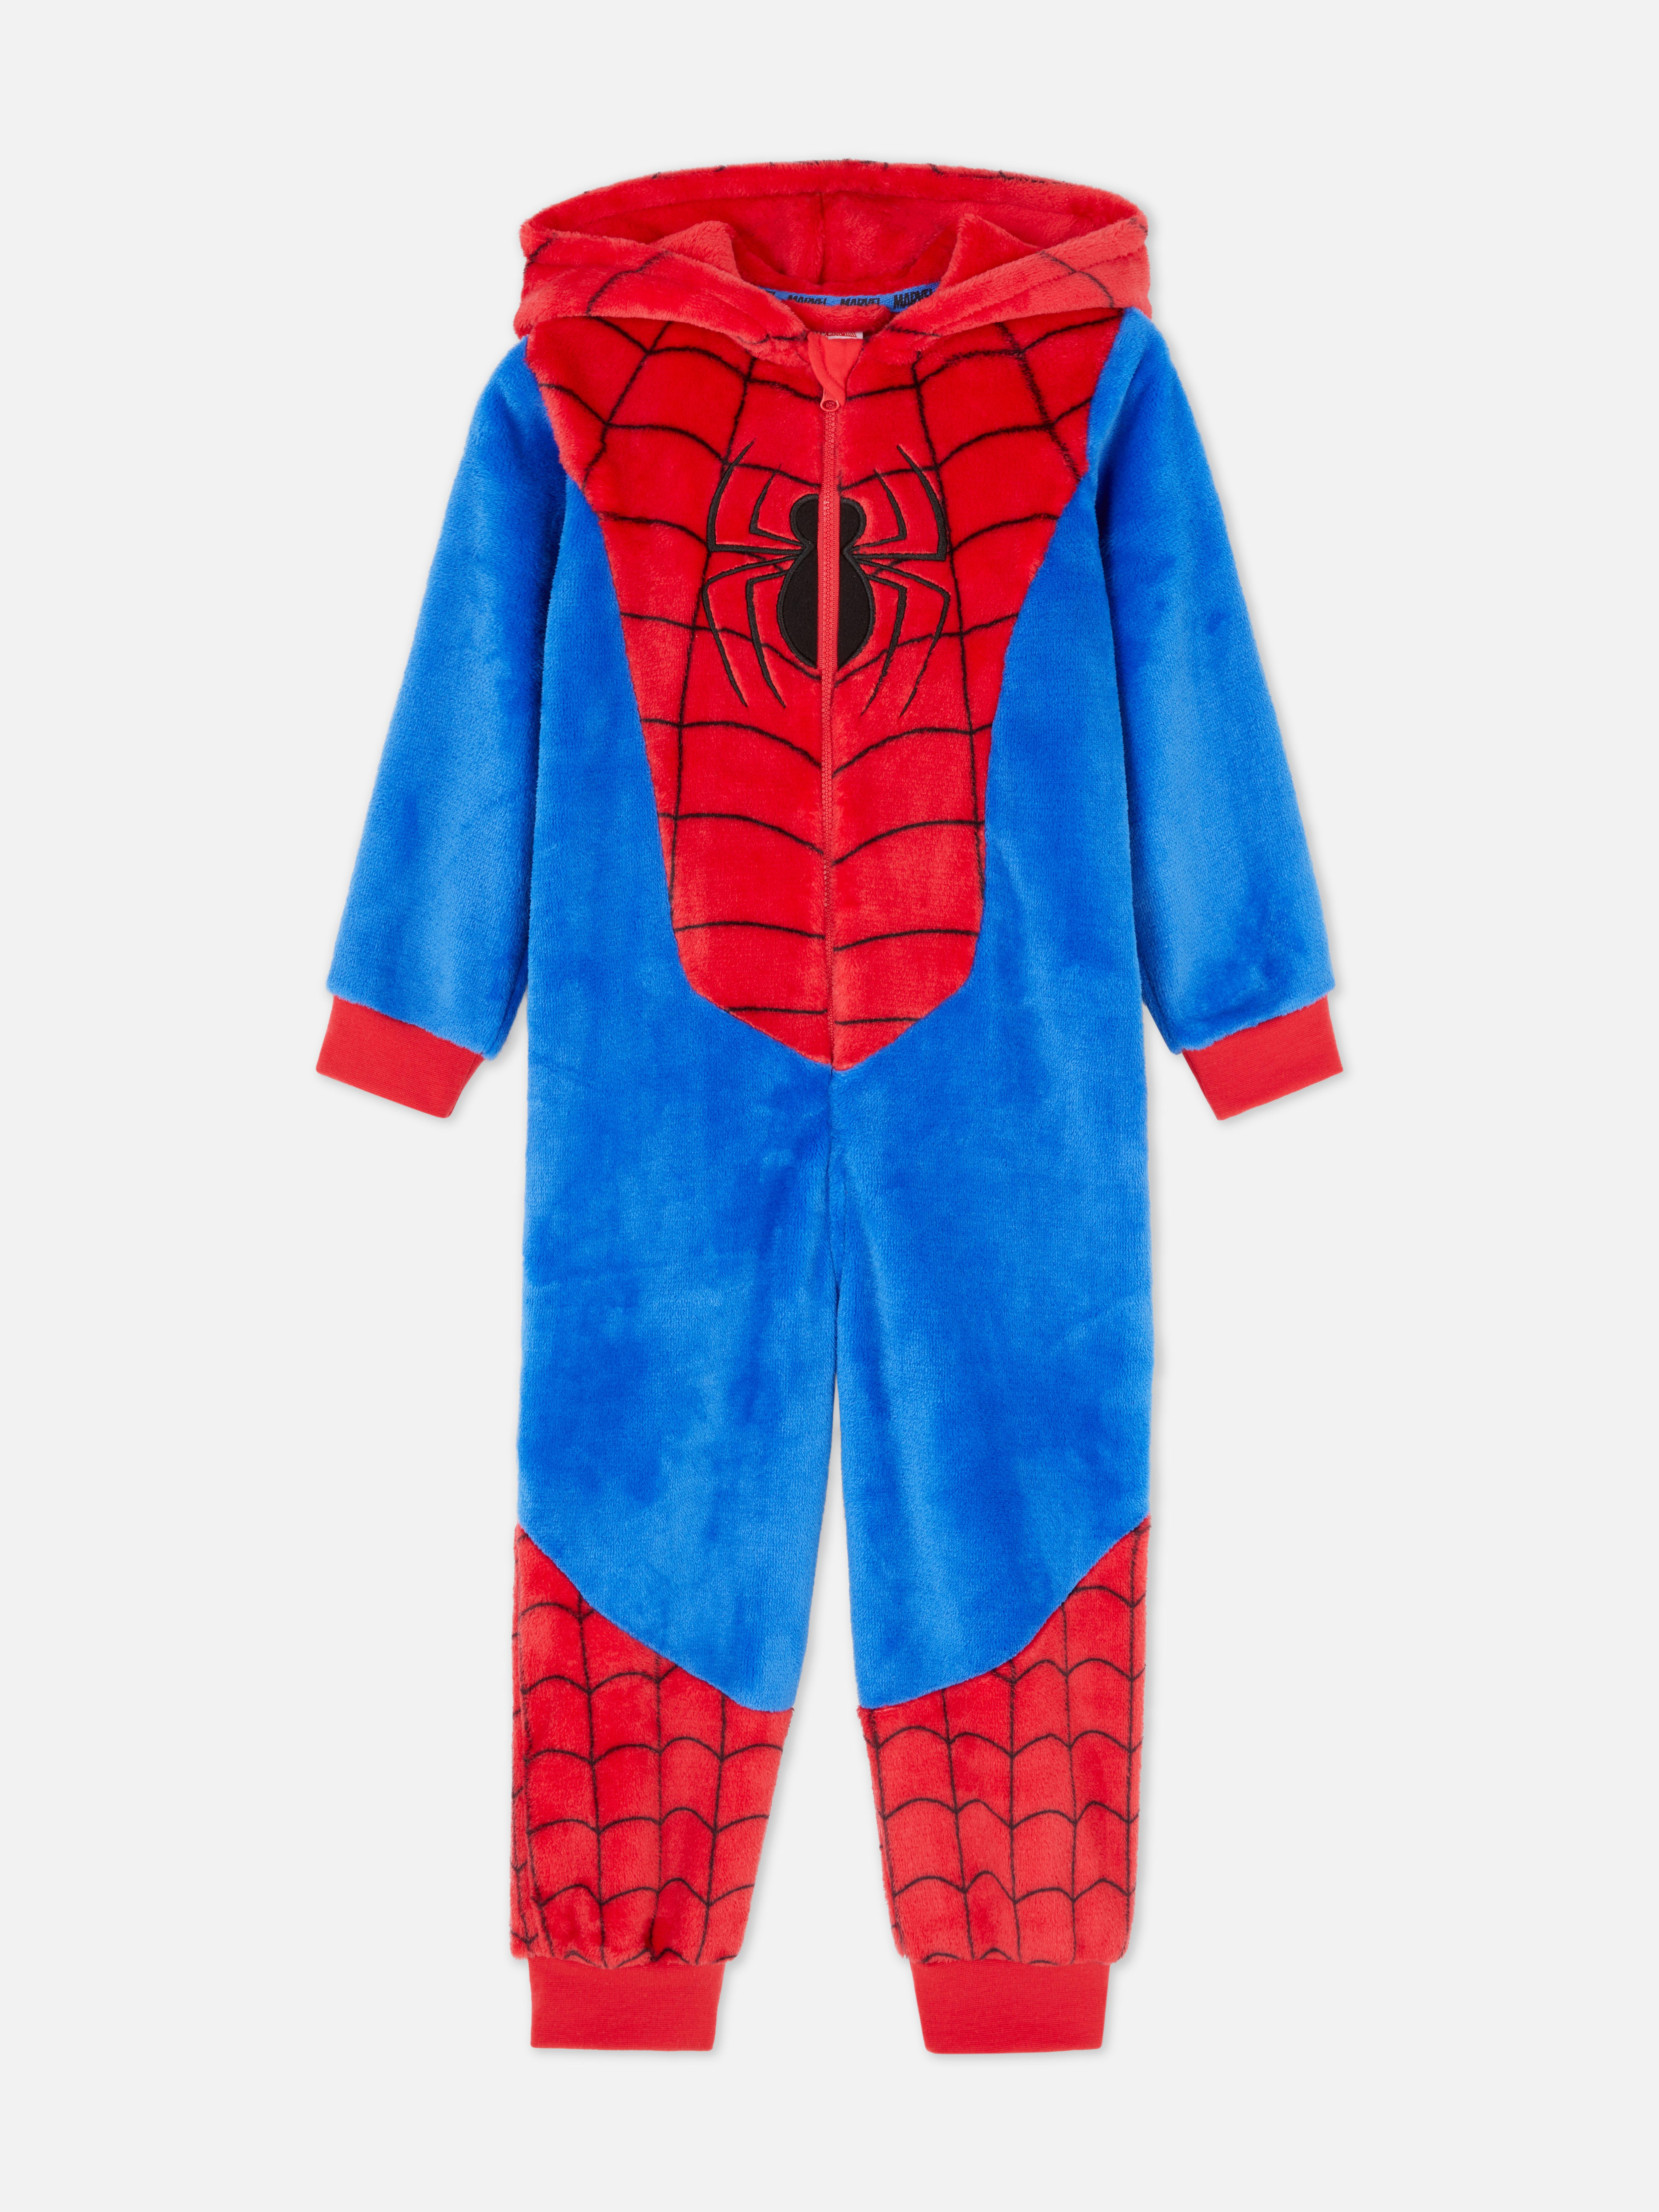 Kids' Marvel Spider-Man Dress Up Onesie